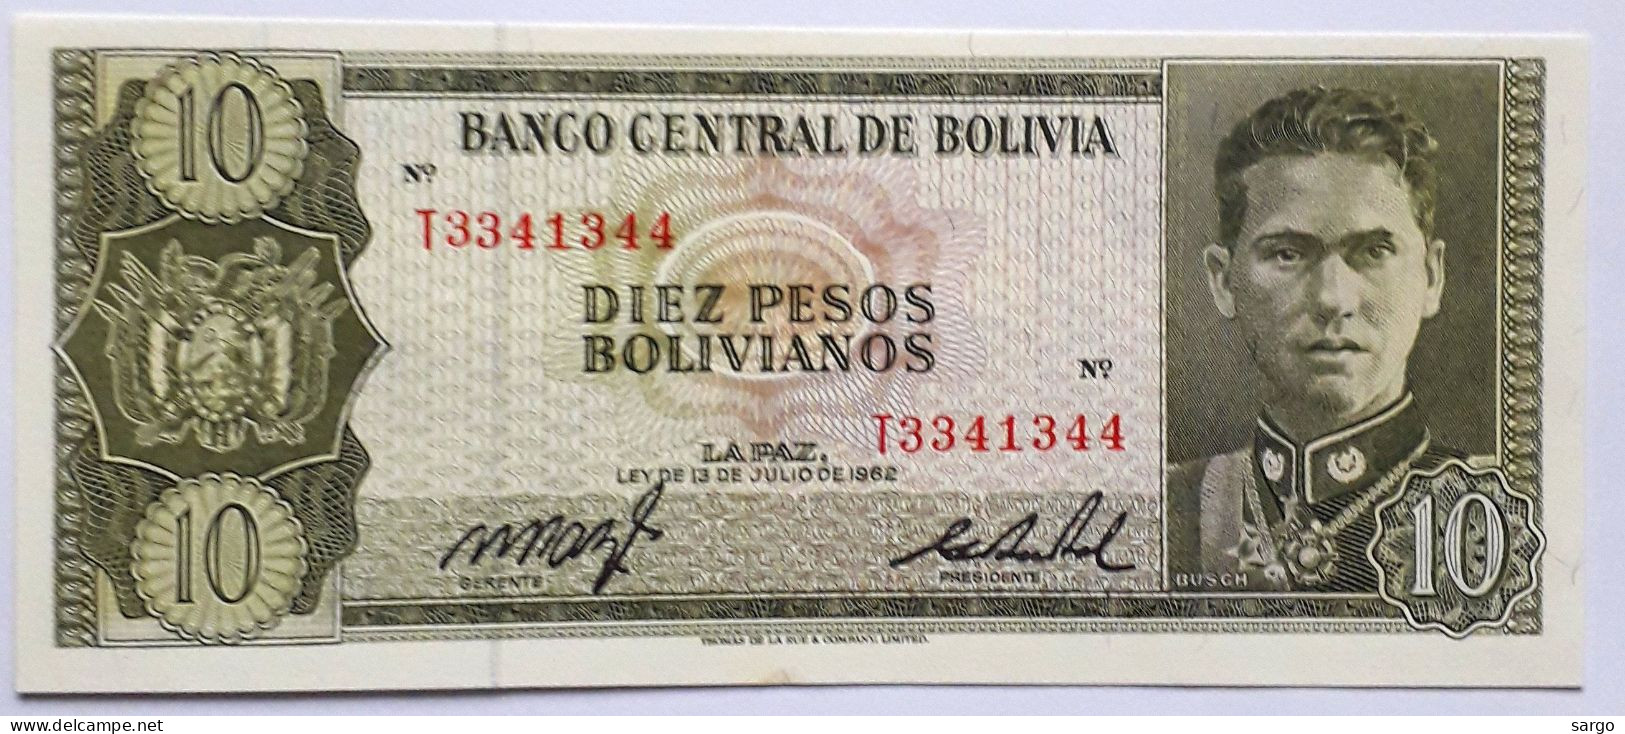 BOLIVIA - 10 PESOS  BOLIVIANOS  - P 154  (1962) - UNC - BANKNOTES - PAPER MONEY - CARTAMONETA - - Bolivien